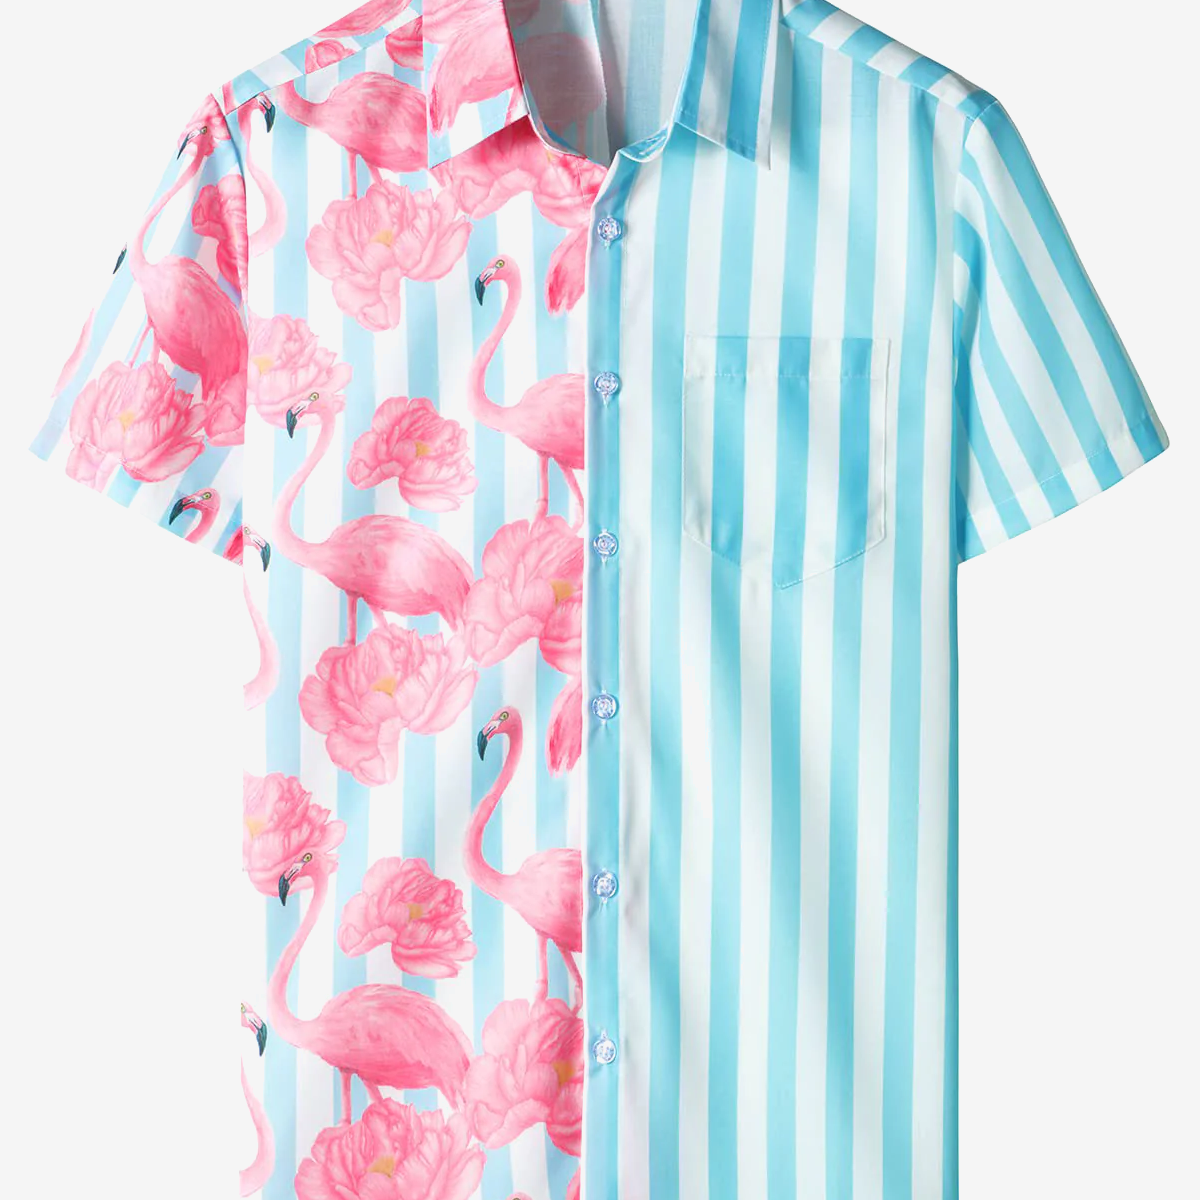 Camisa de manga corta hawaiana divertida con estampado de flamenco rosa floral a rayas azules y blancas para hombre